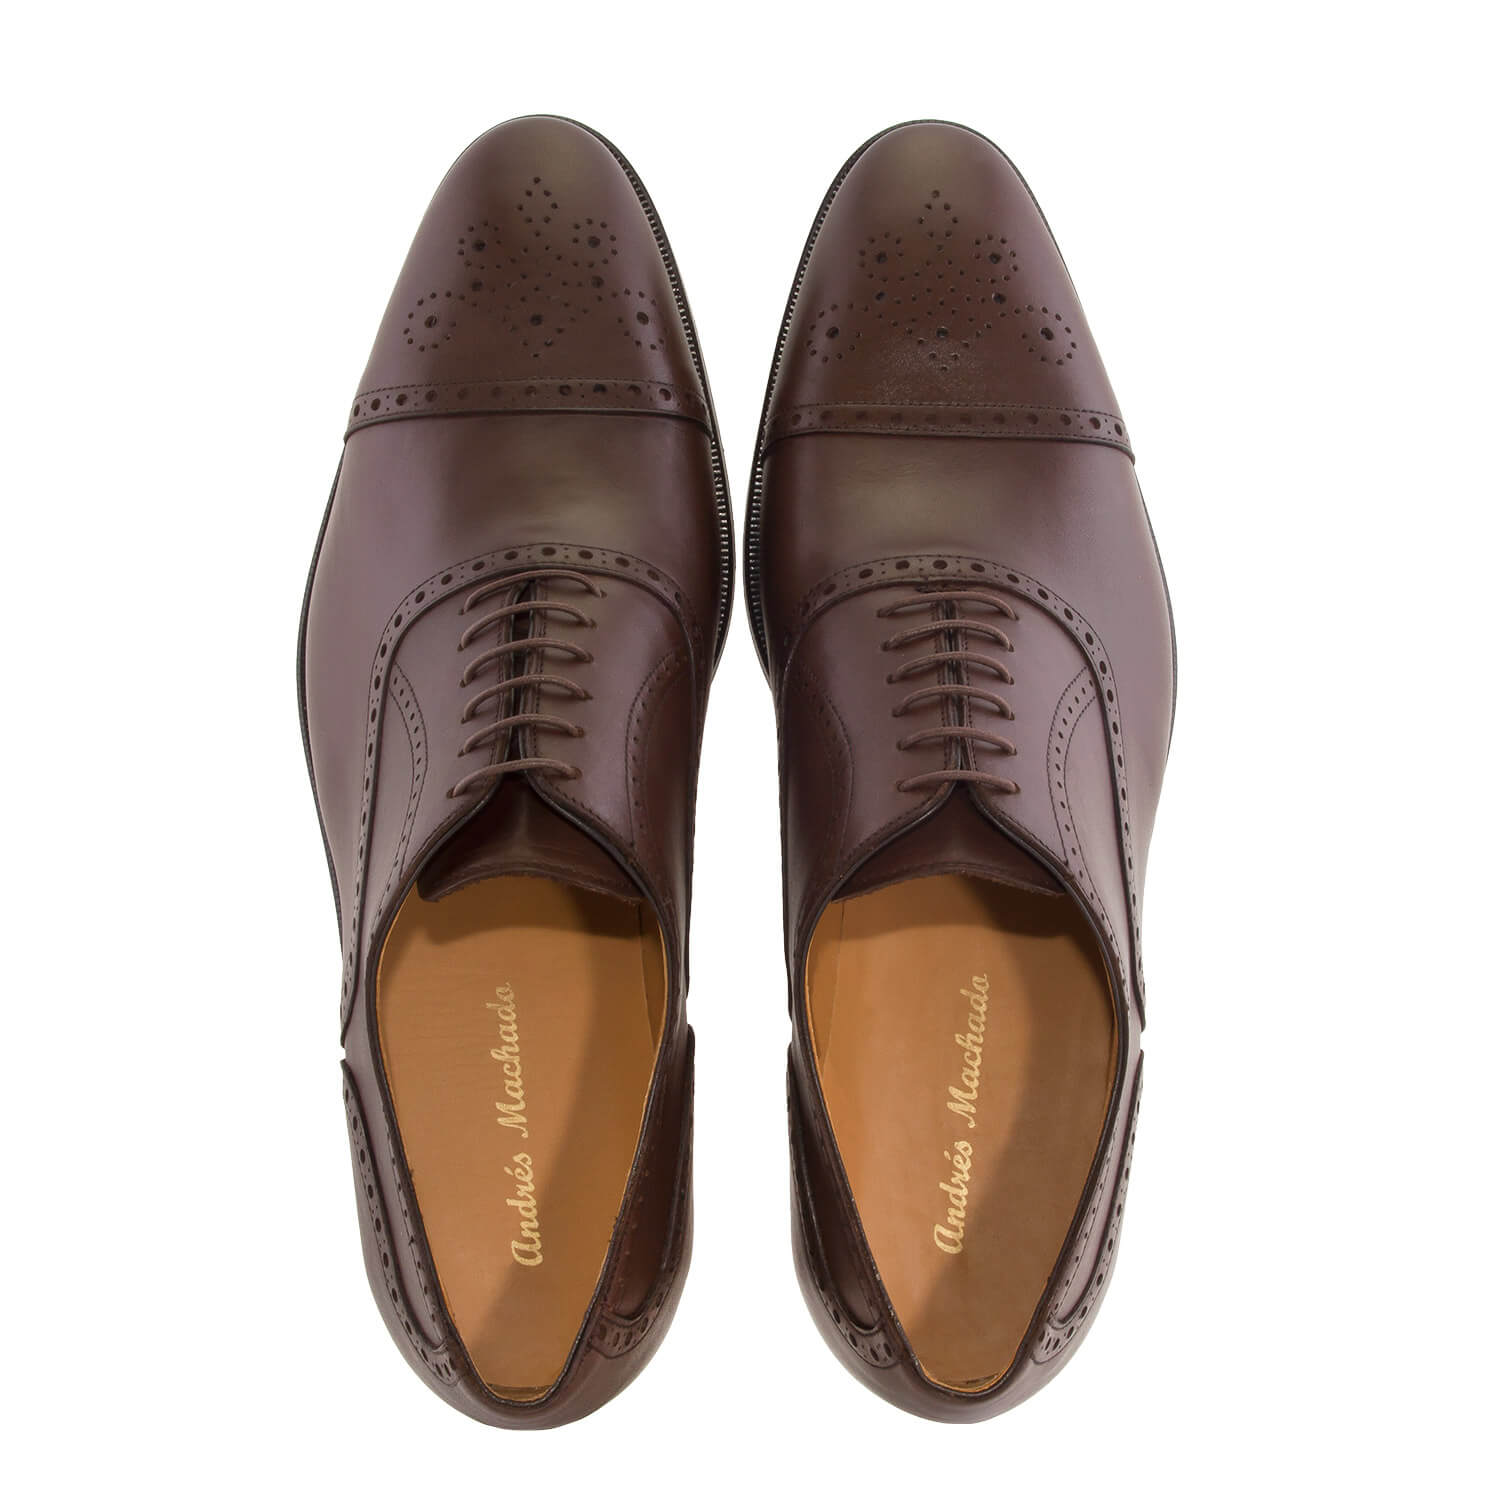 Zapatos estilo Oxford en Piel Marrón 